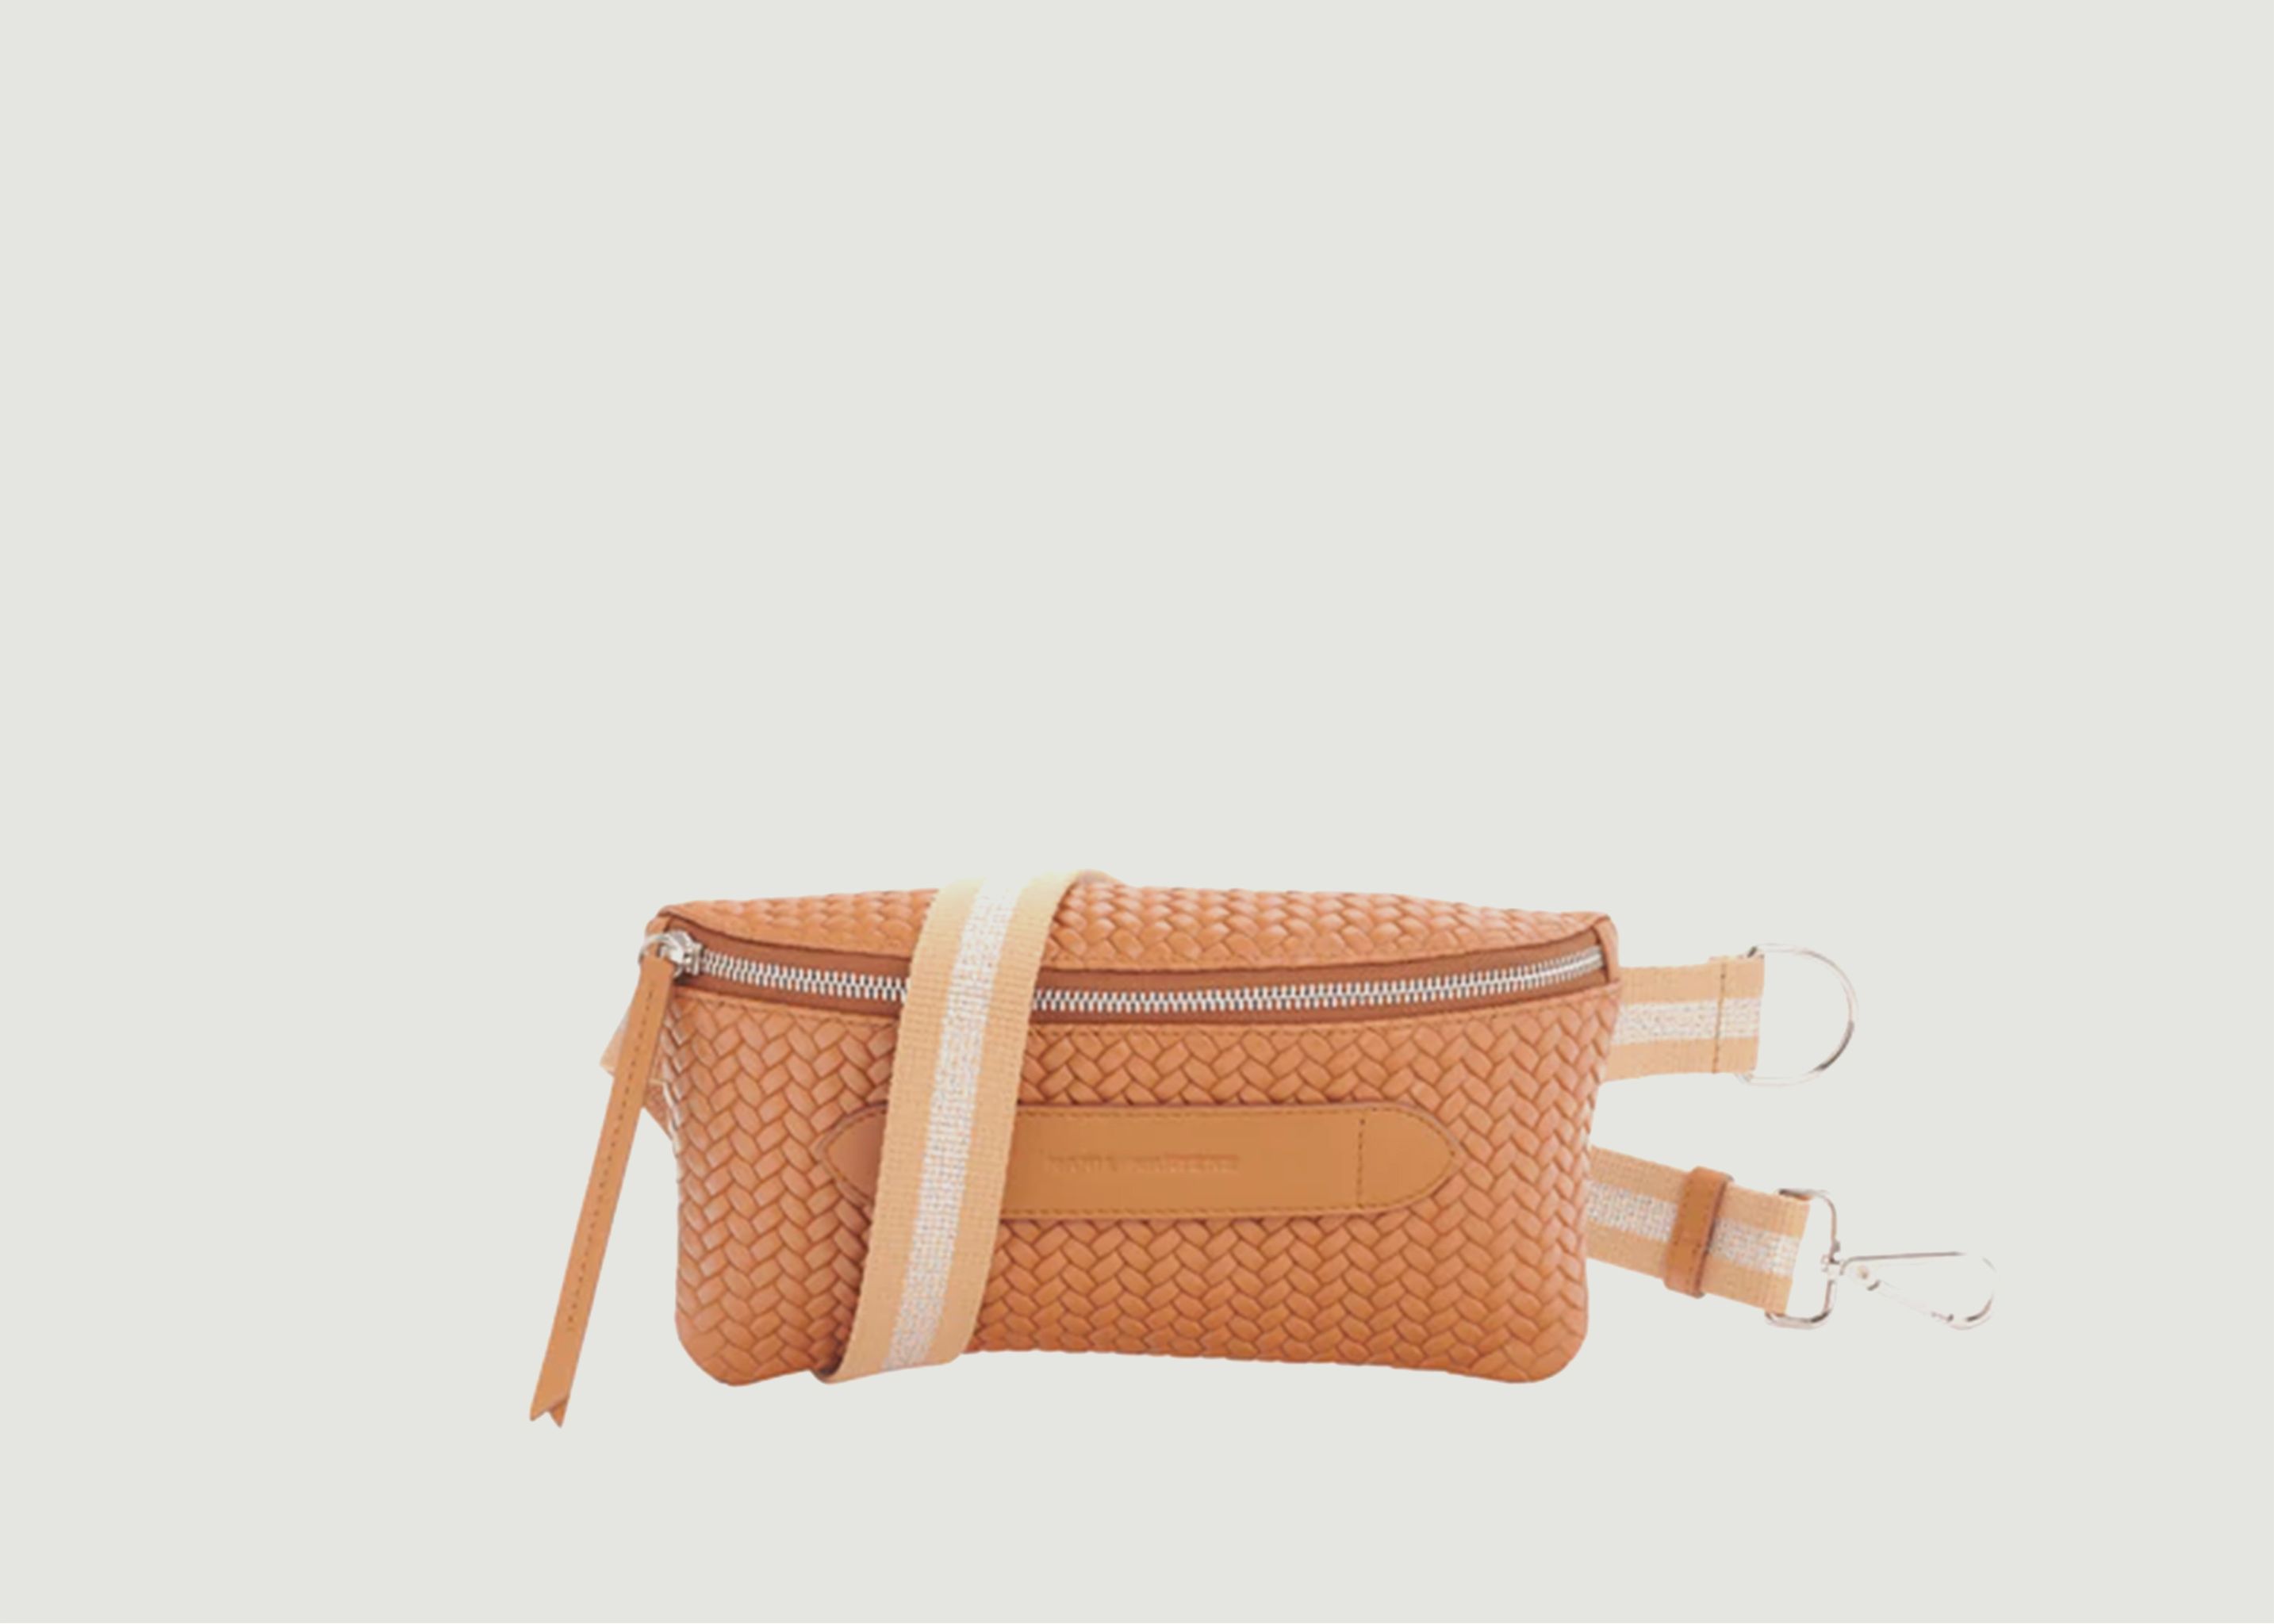 Braided Coachella bag - Marie Martens